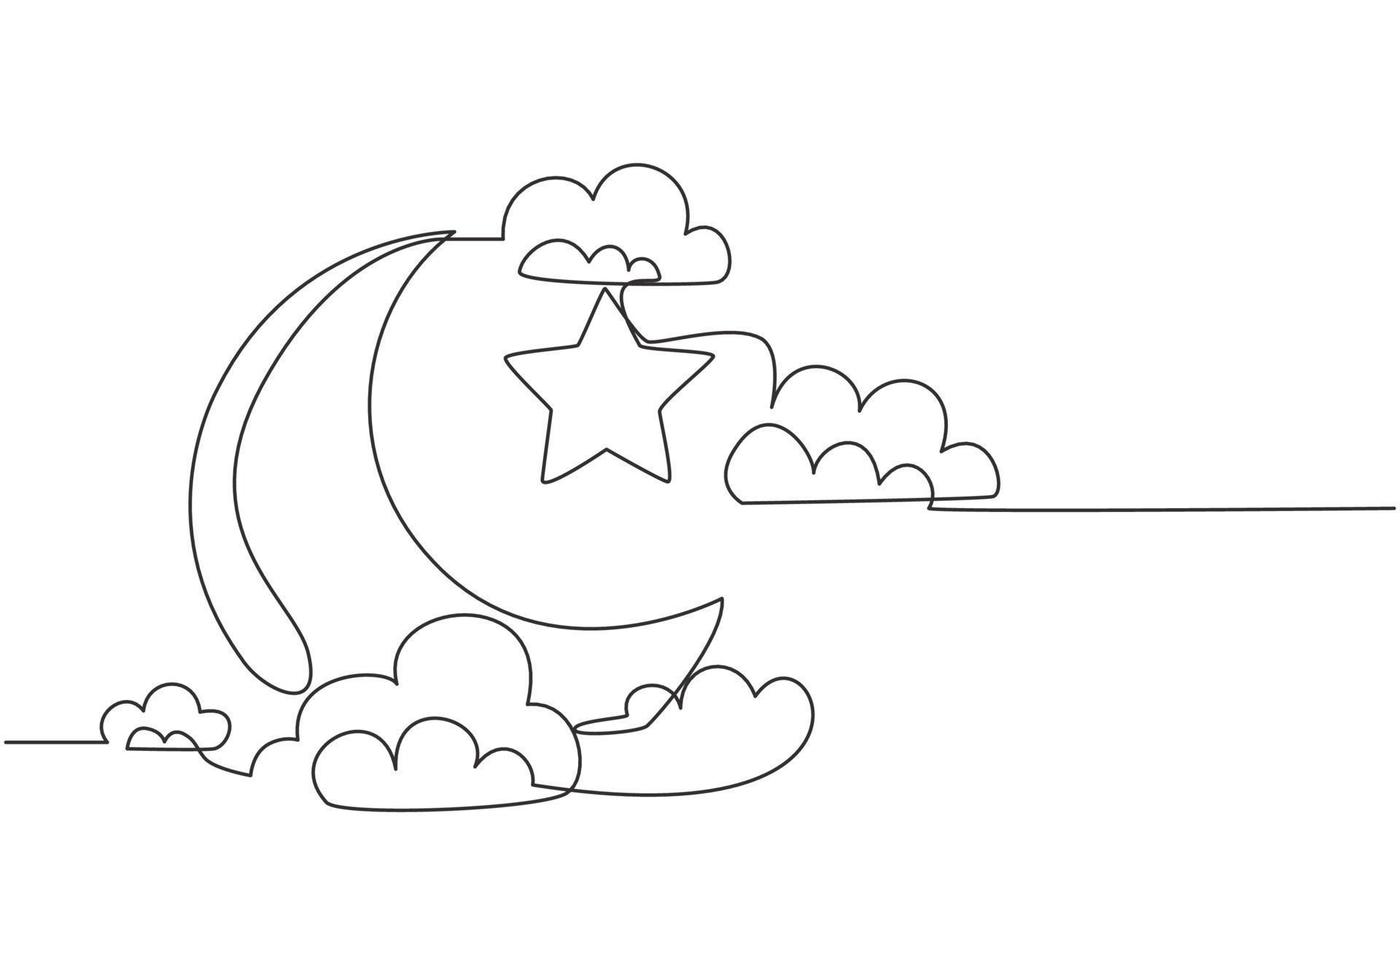 einer Single Linie Zeichnung von islamisch Ornament mit Mond und Star und wolkig Himmel auf Weiß Hintergrund. Ramadan kareem Gruß Karte, Banner, und Poster Konzept. kontinuierlich Linie zeichnen Vektor Illustration